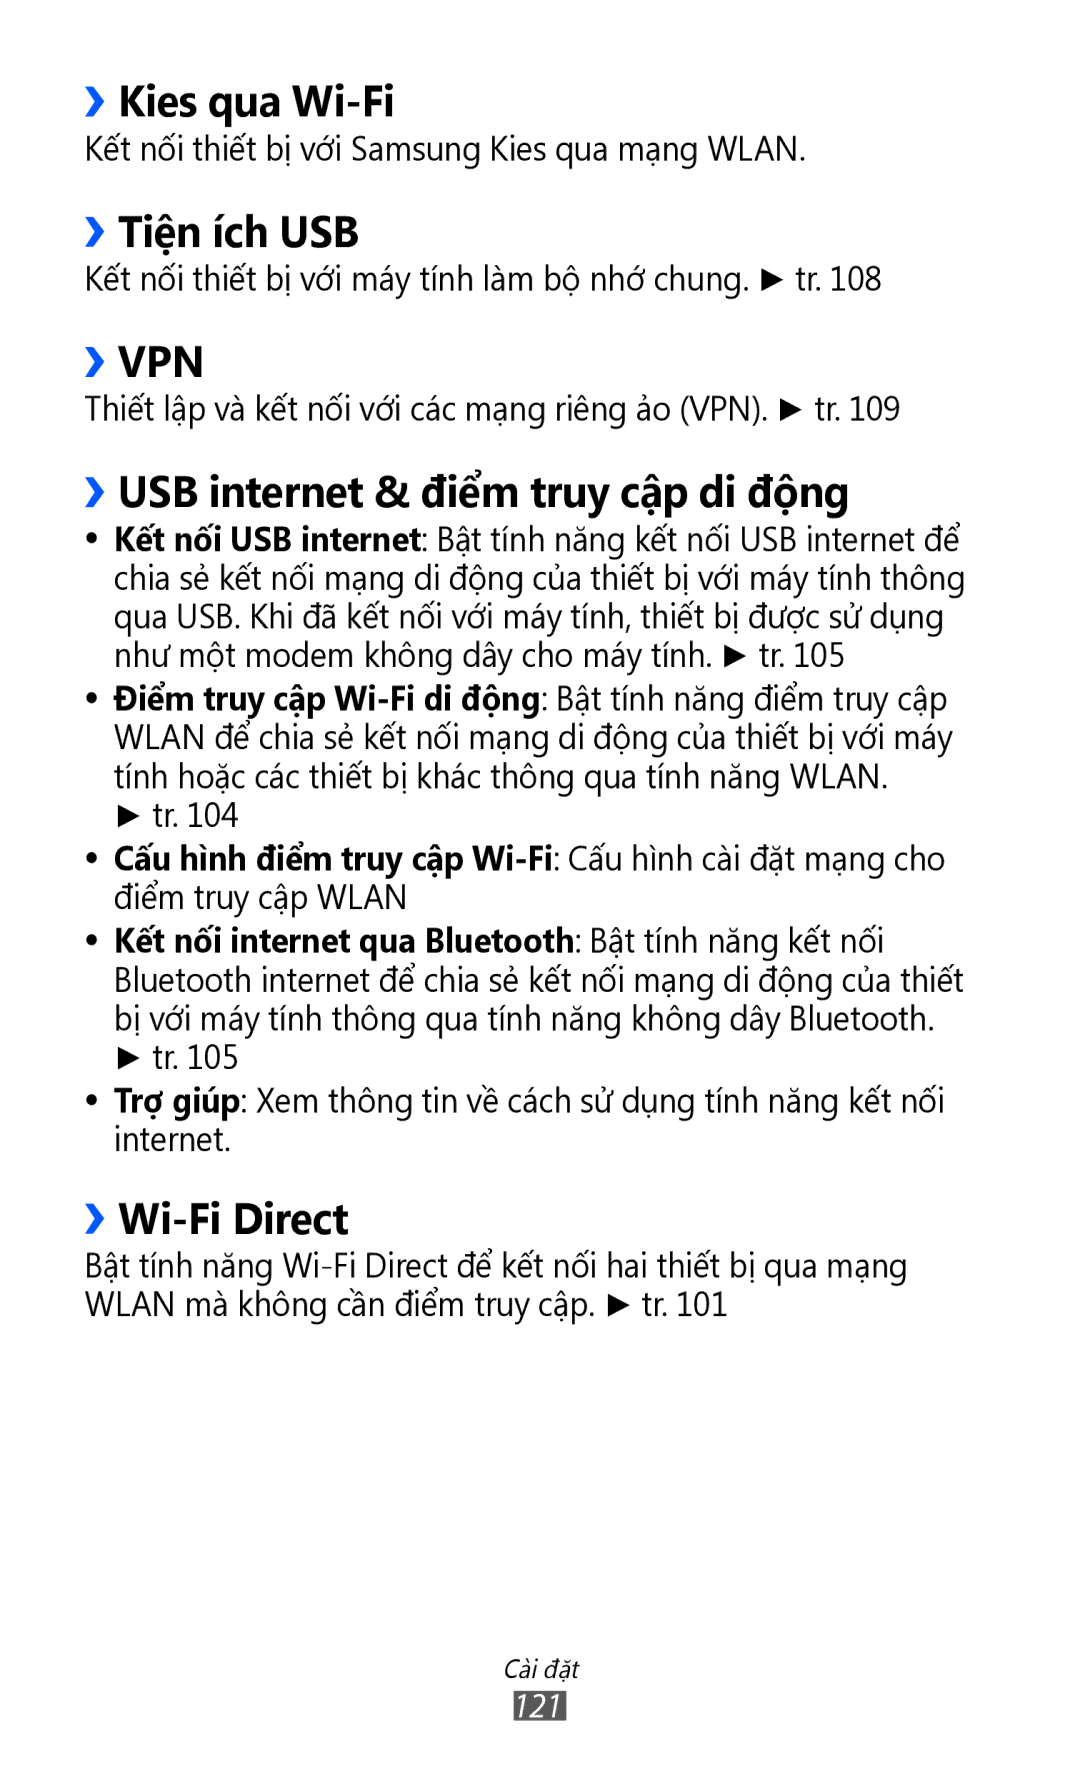 Samsung GT-I9100RWAXXV manual ››Kies qua Wi-Fi, ››Tiên ich USB, ››USB internet & điểm truy cập di động, ››Wi-Fi Direct 